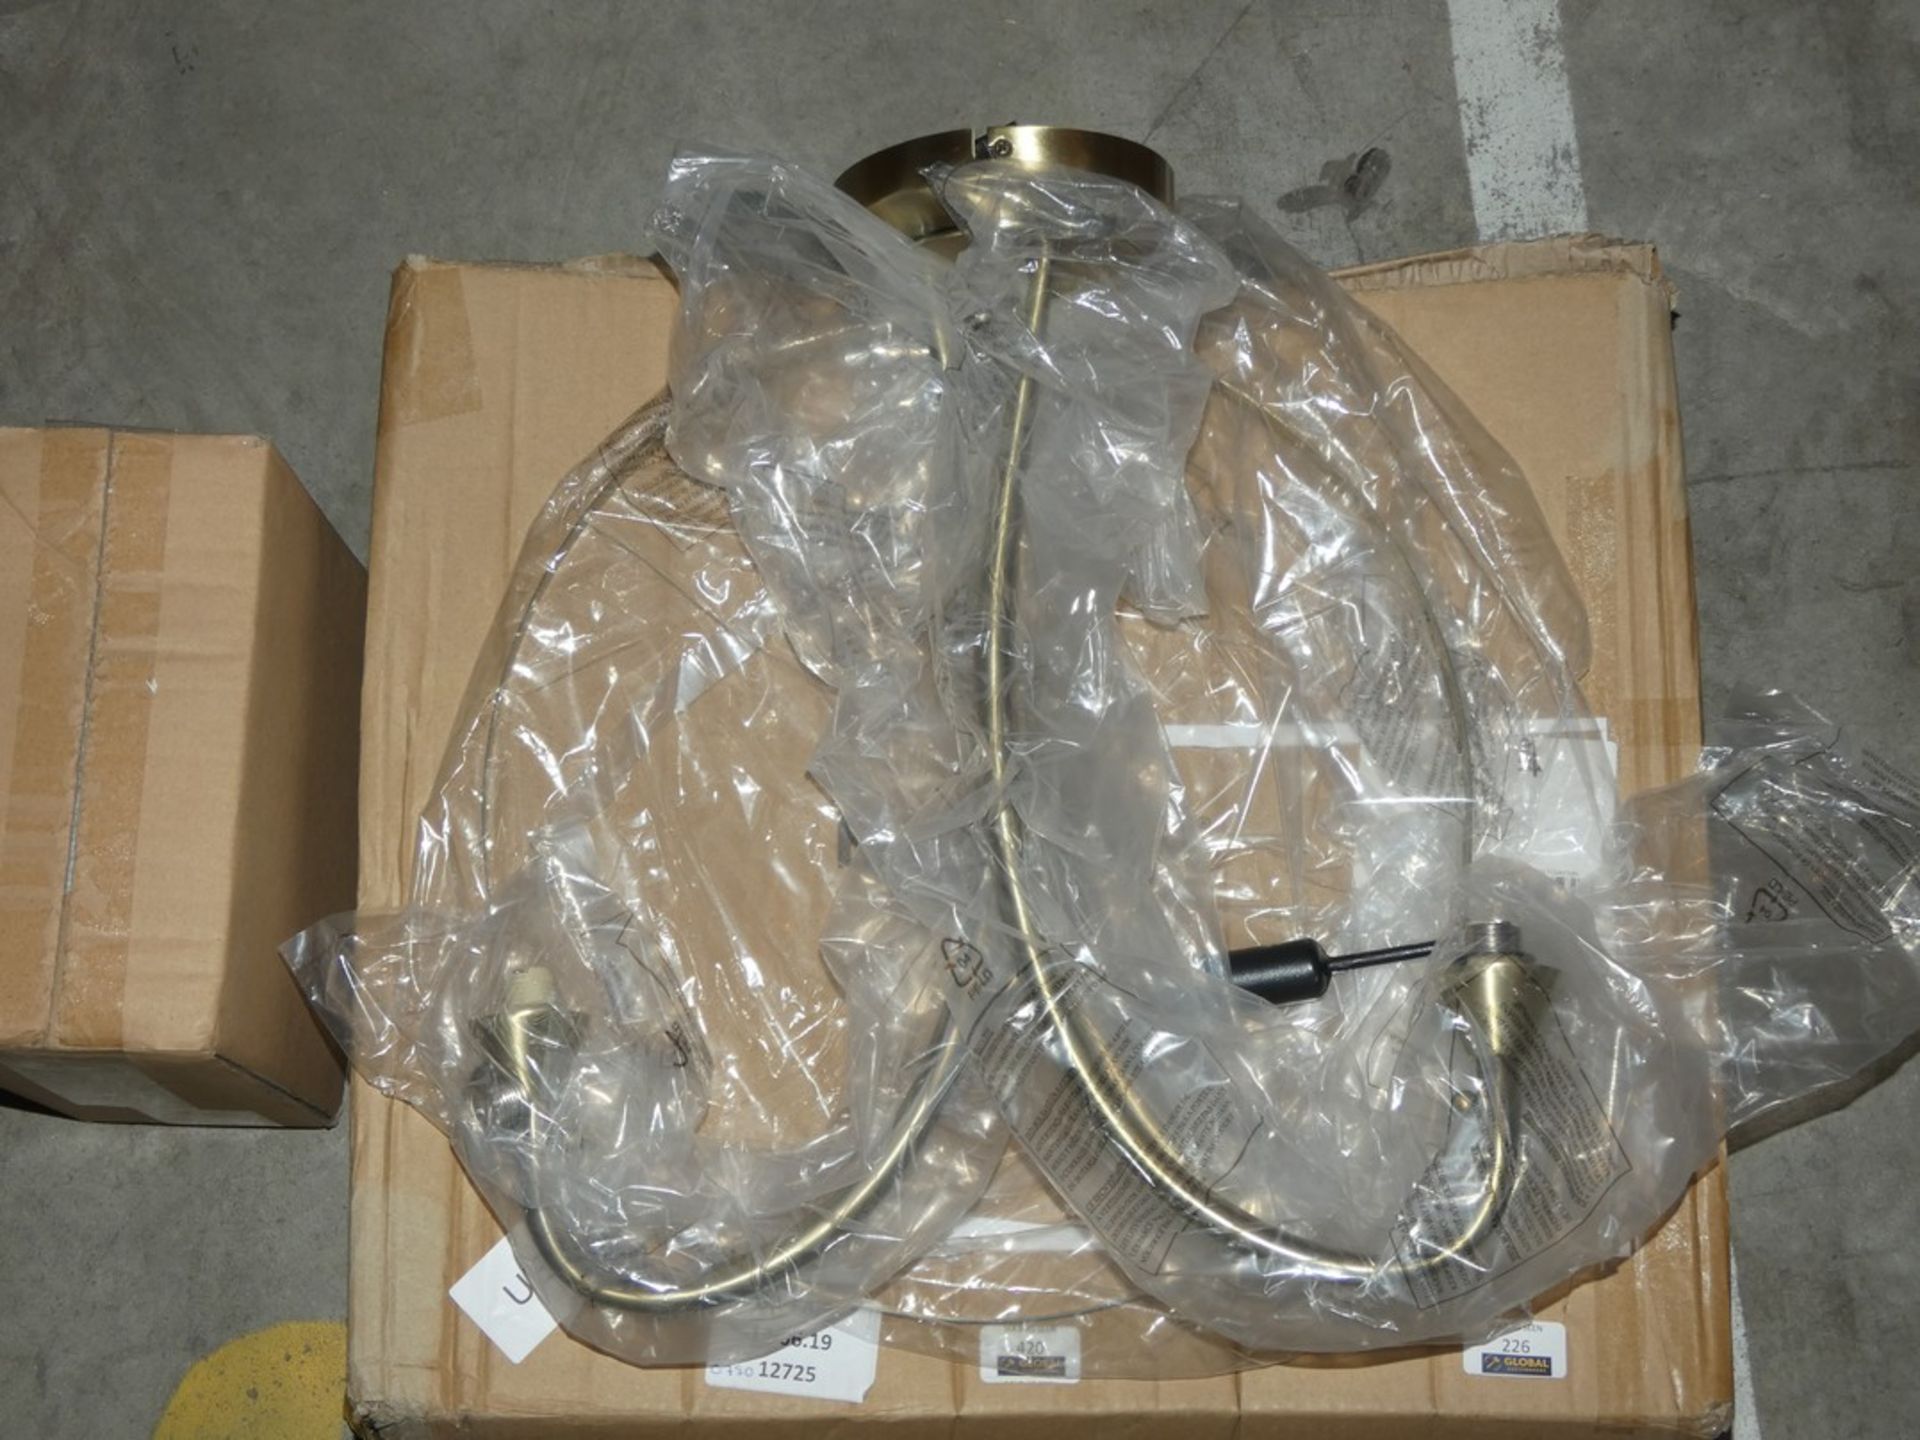 Boxed Antique Brass 3 Light Designer Ceiling Light Fitting From Endon Lighting RRP £75 (12725)(